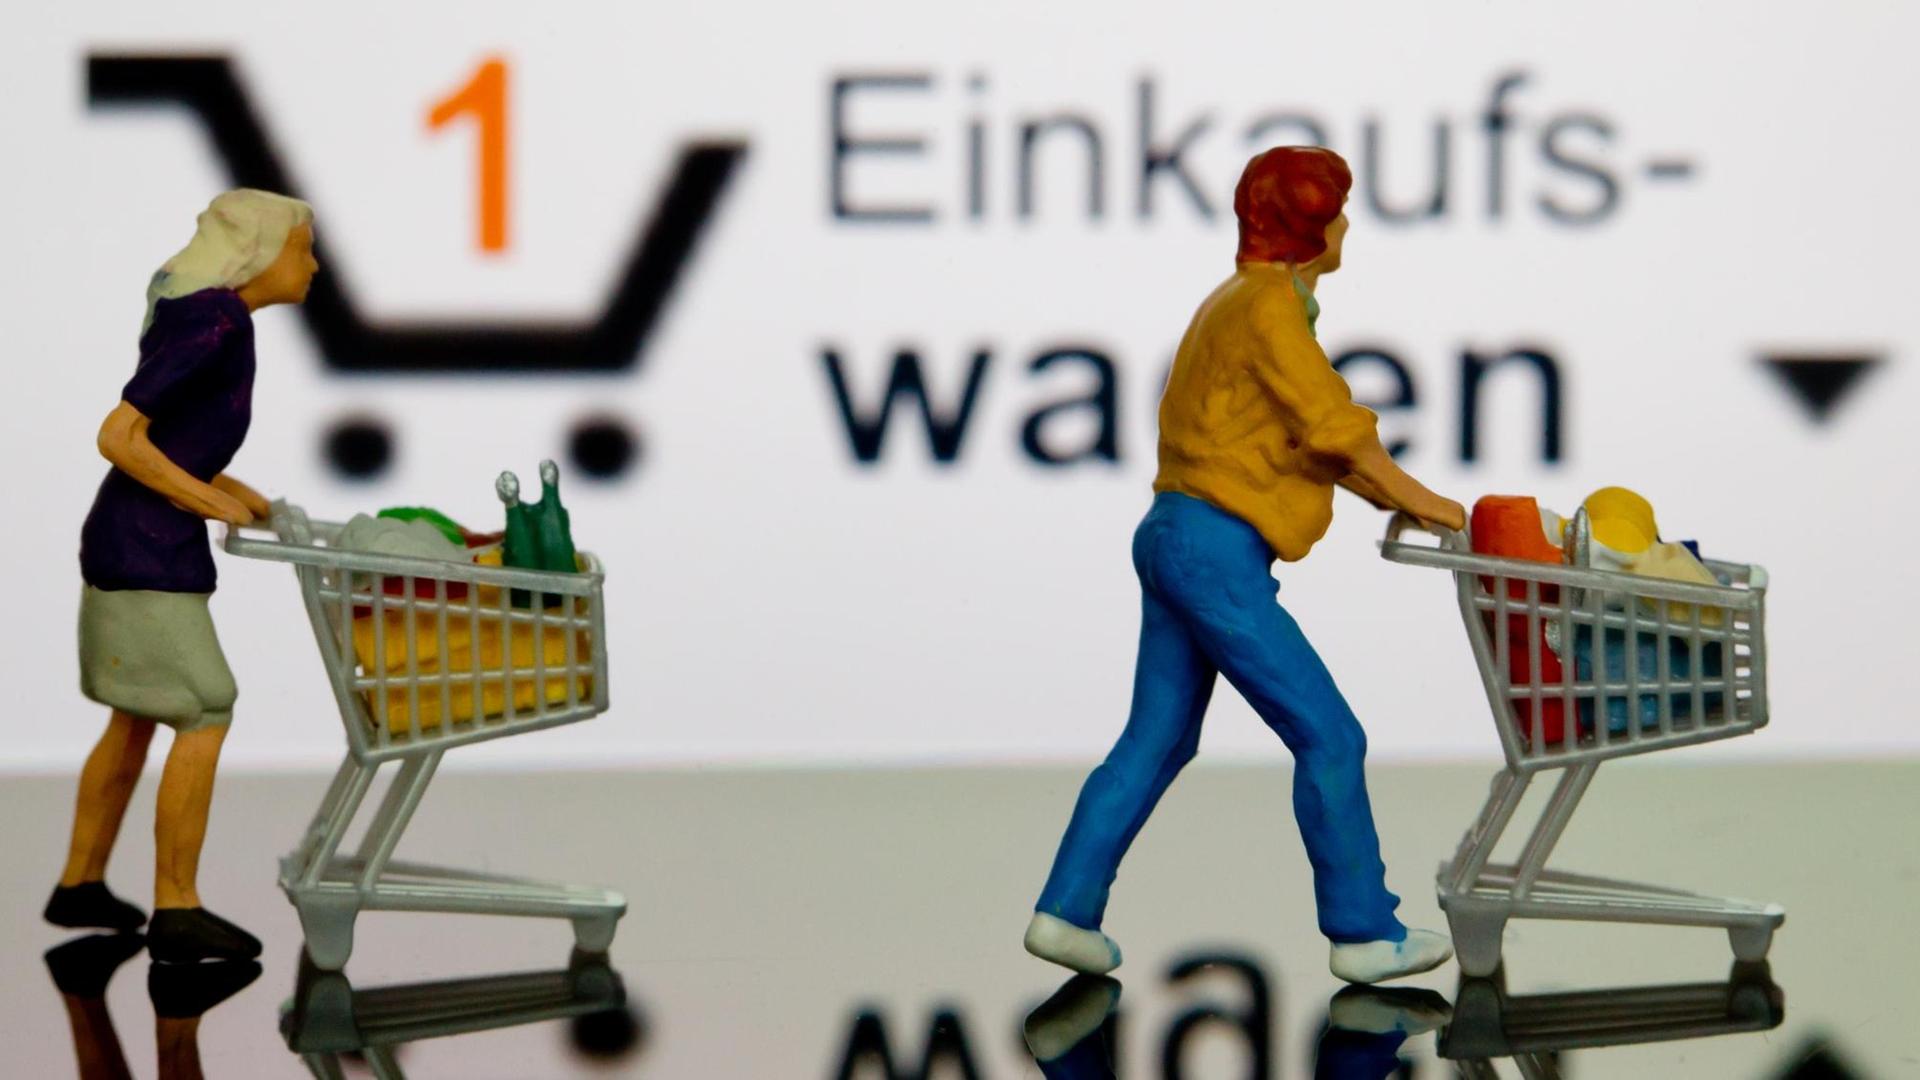 Zwei kleine Plastikfiguren mit Einkaufswagen stehen in Berlin vor einem iPhone auf dem der virtuelle Einkaufswagen dargestellt ist, aufgenommen am 06.11.2012.